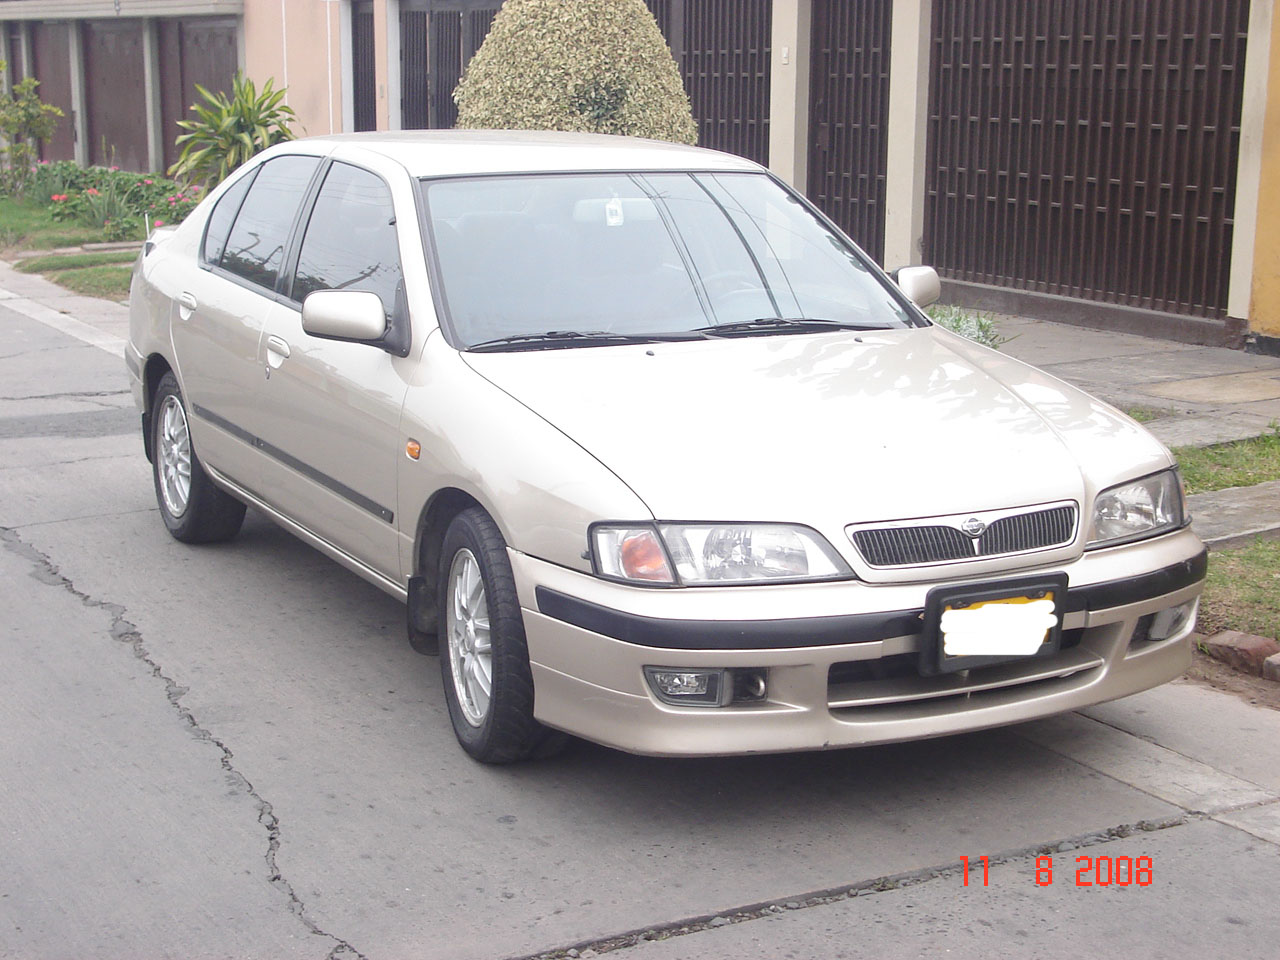 Ниссан 2000 года выпуска. Ниссан премьера 2000. Ниссан премьера 98 года. Ниссан примера 2000 года. Nissan primera 98 год.